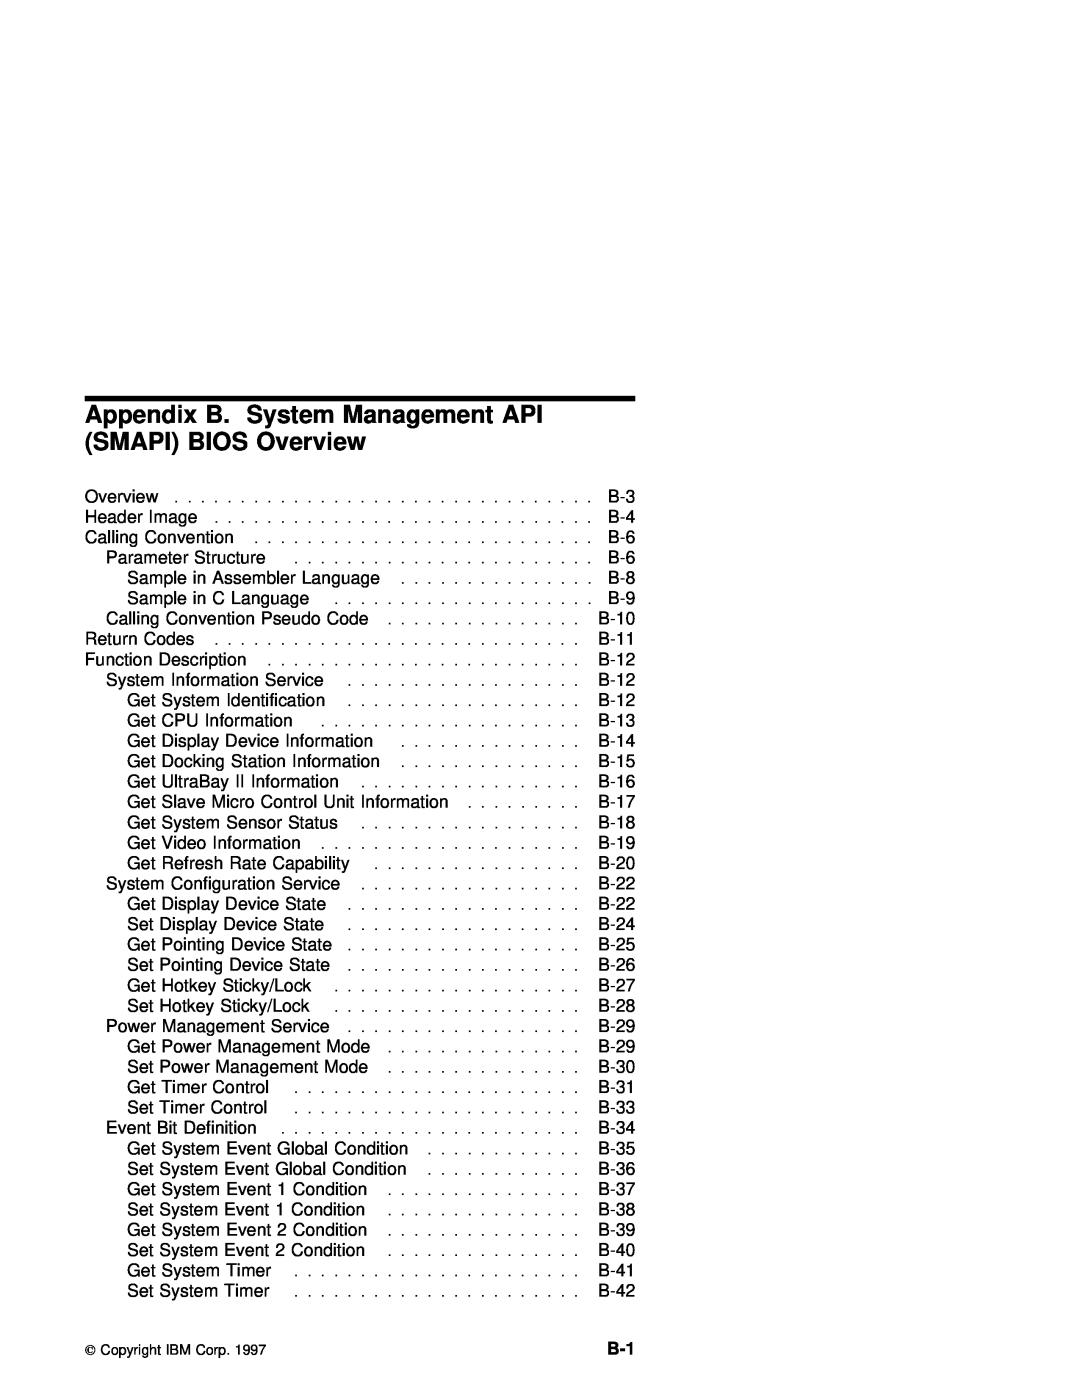 IBM 770 manual Appendix B. System Management API SMAPI BIOS Overview 